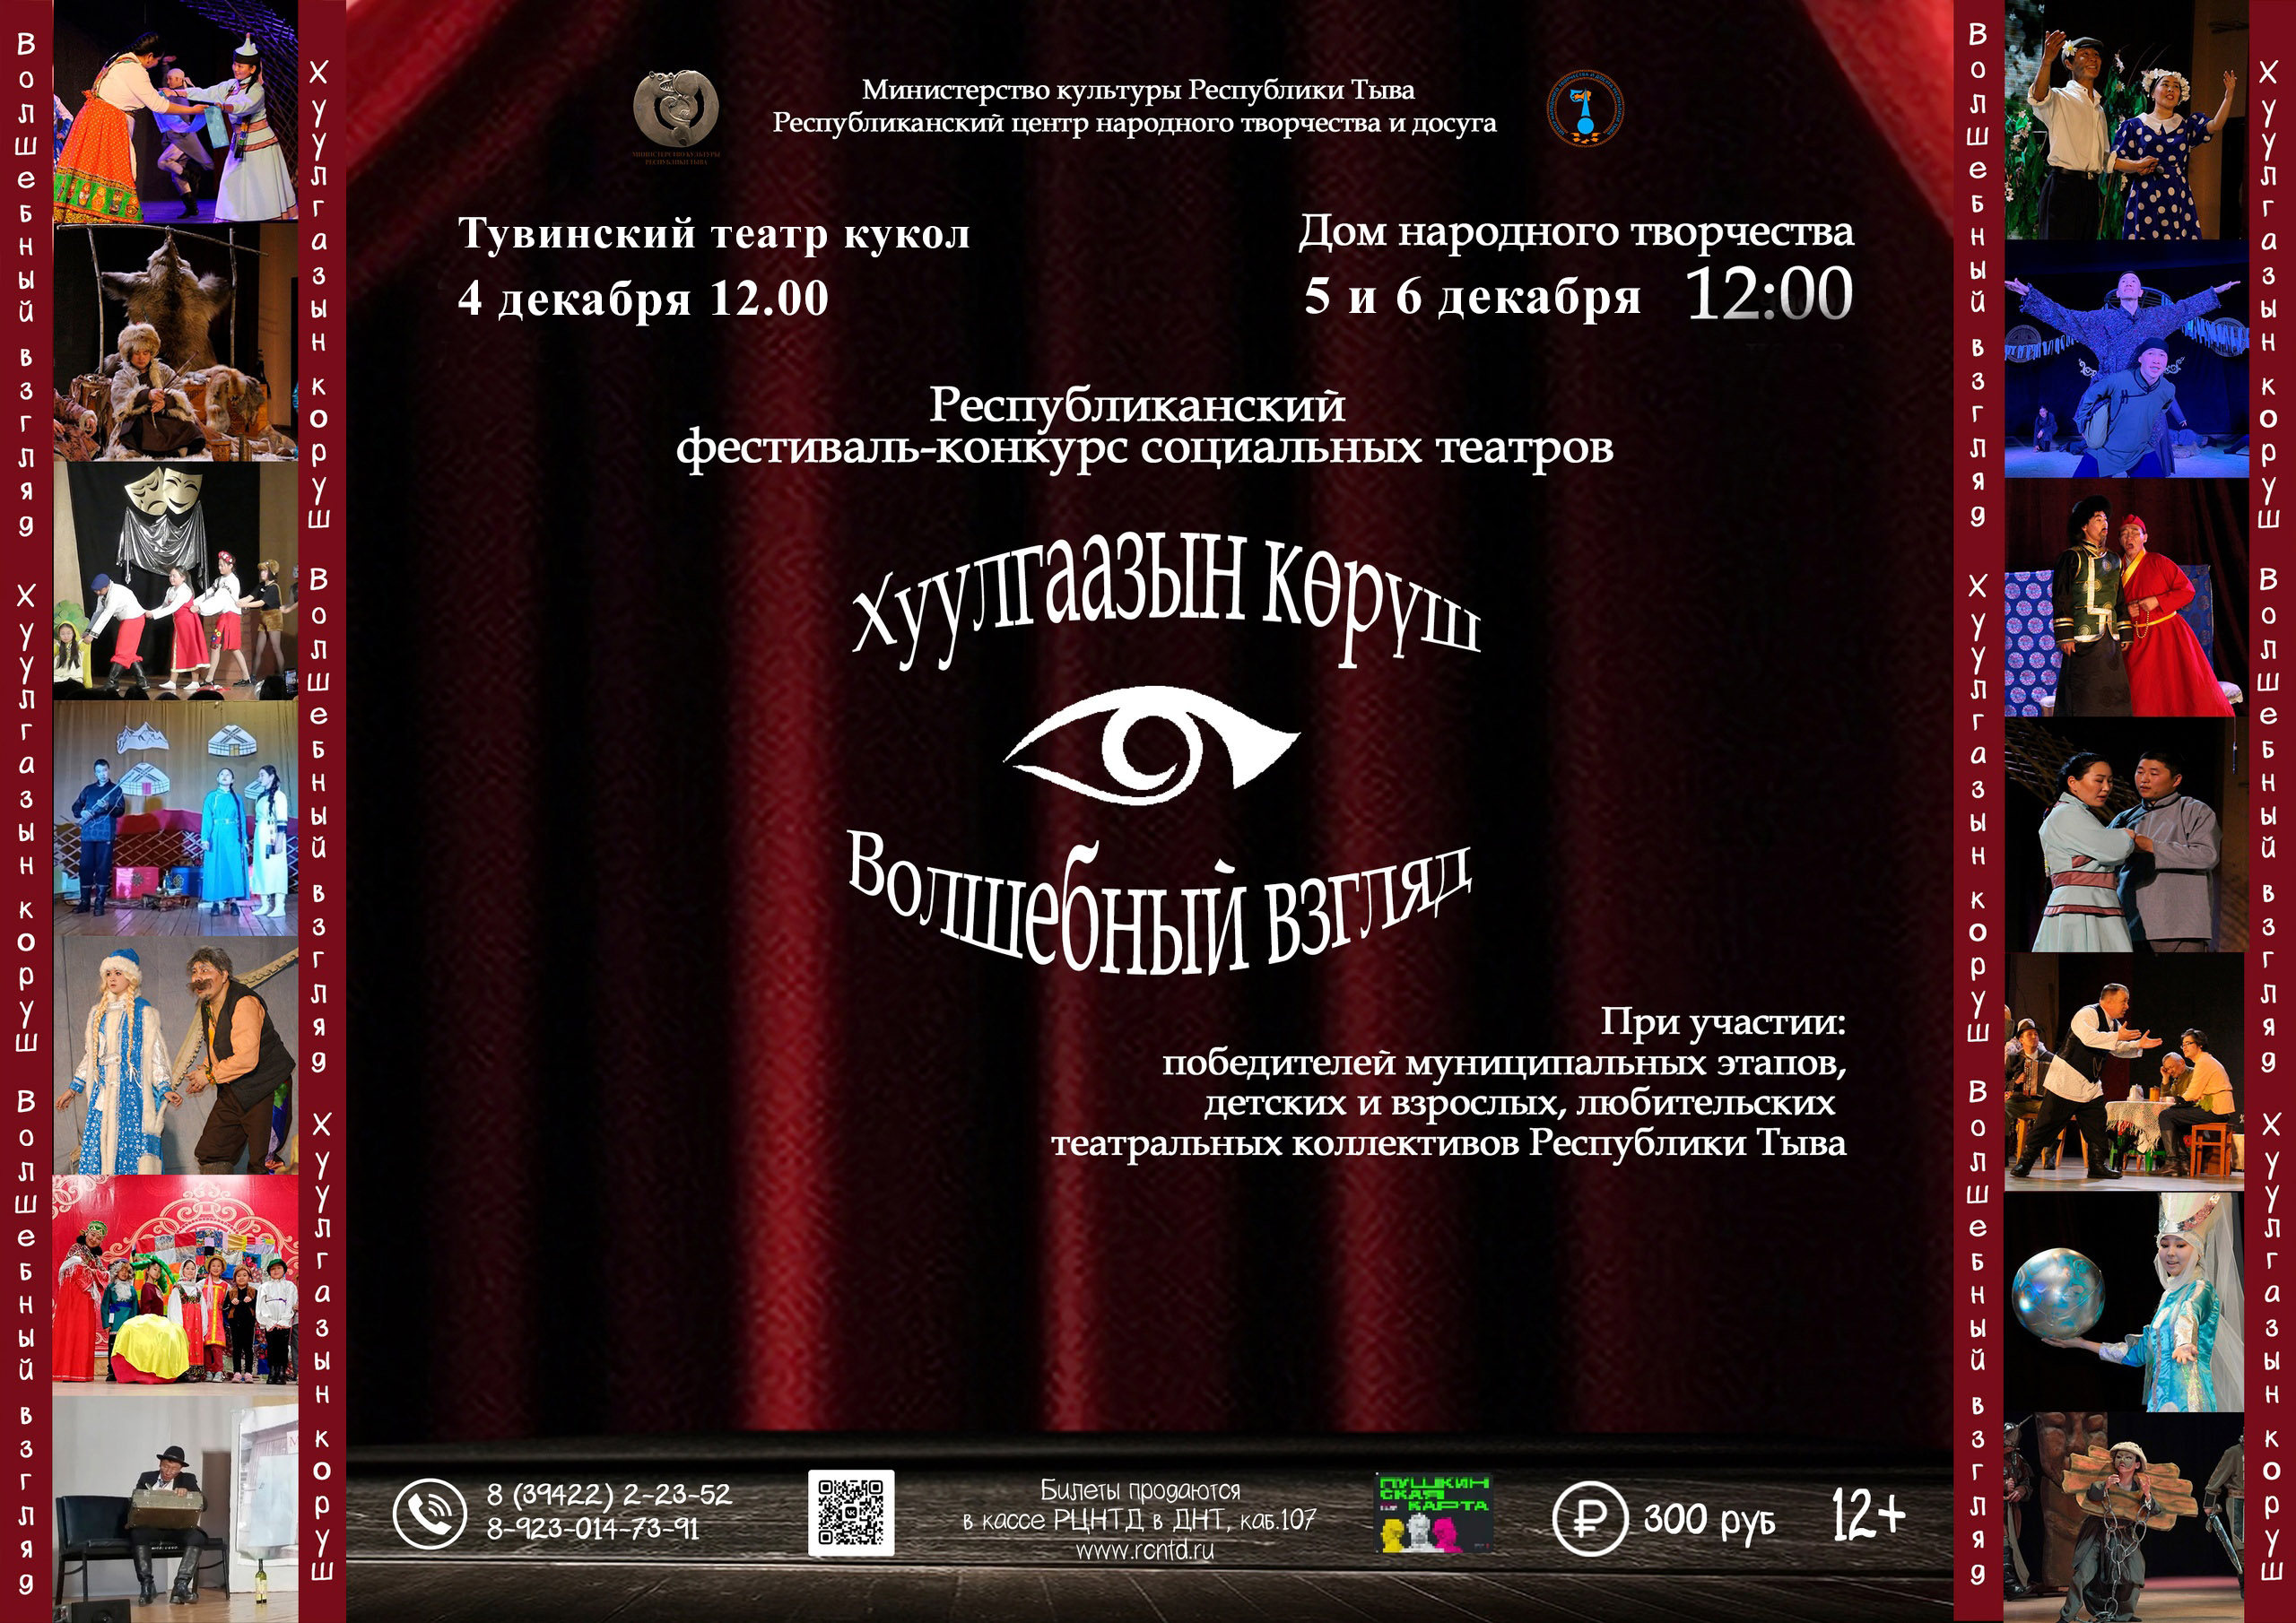 Фестиваль-конкурс социальных театров "Хуулгаазын көрүш" (Волшебный взгляд)